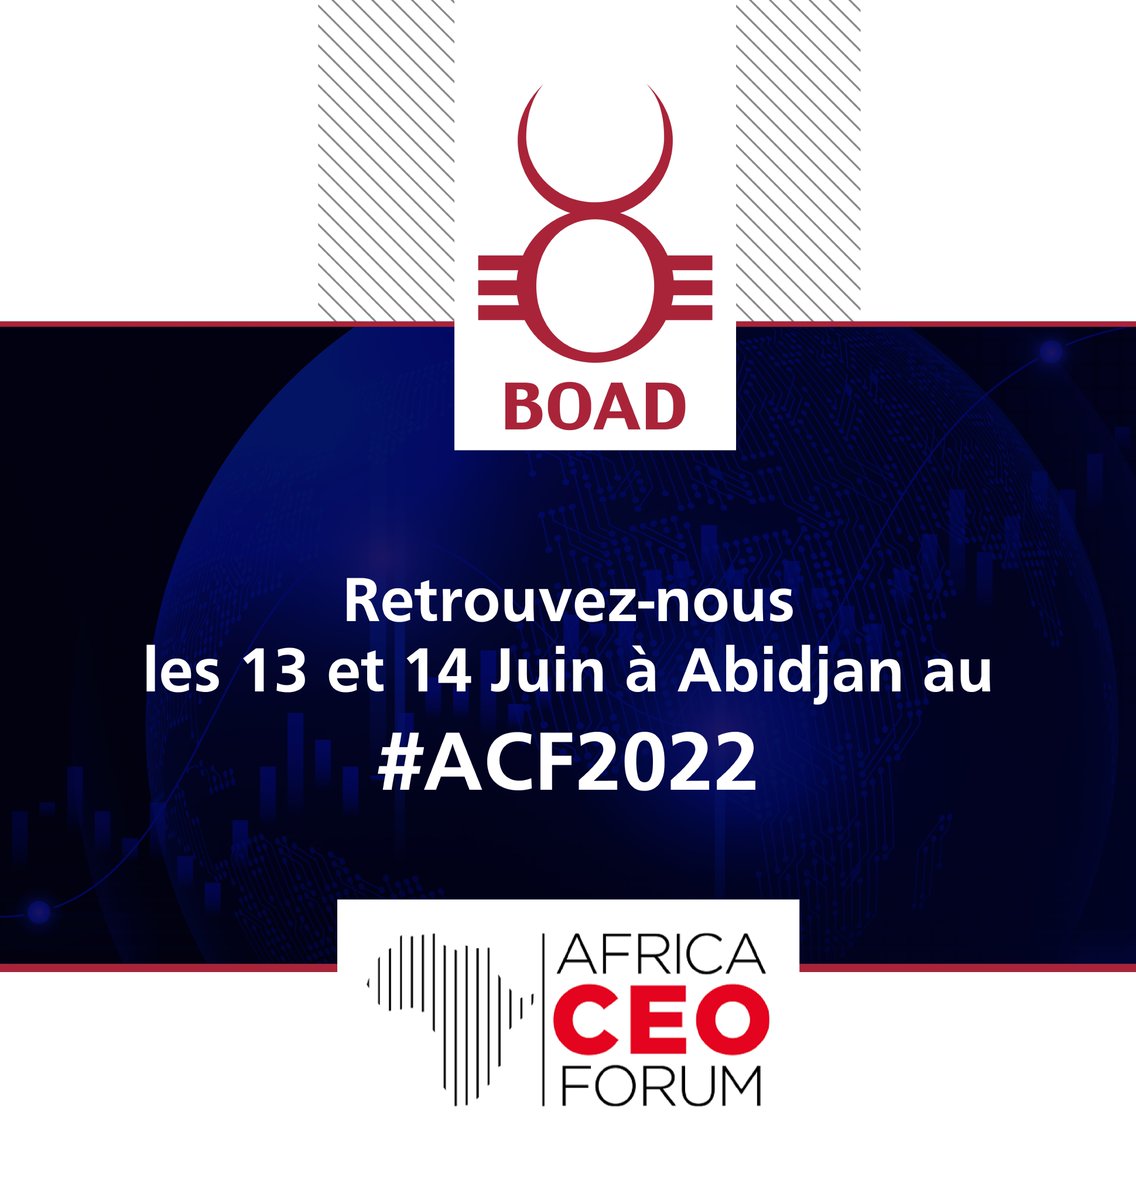 #ACF2022 #SaveTheDate 
🔘Rejoignez-nous les 13 et 14 Juin 2022 à Abidjan au @africaceoforum. 
📌La BOAD, ➡️coeur de cible du financement du #développement des Etats et du #secteurprivé de l'UEMOA.